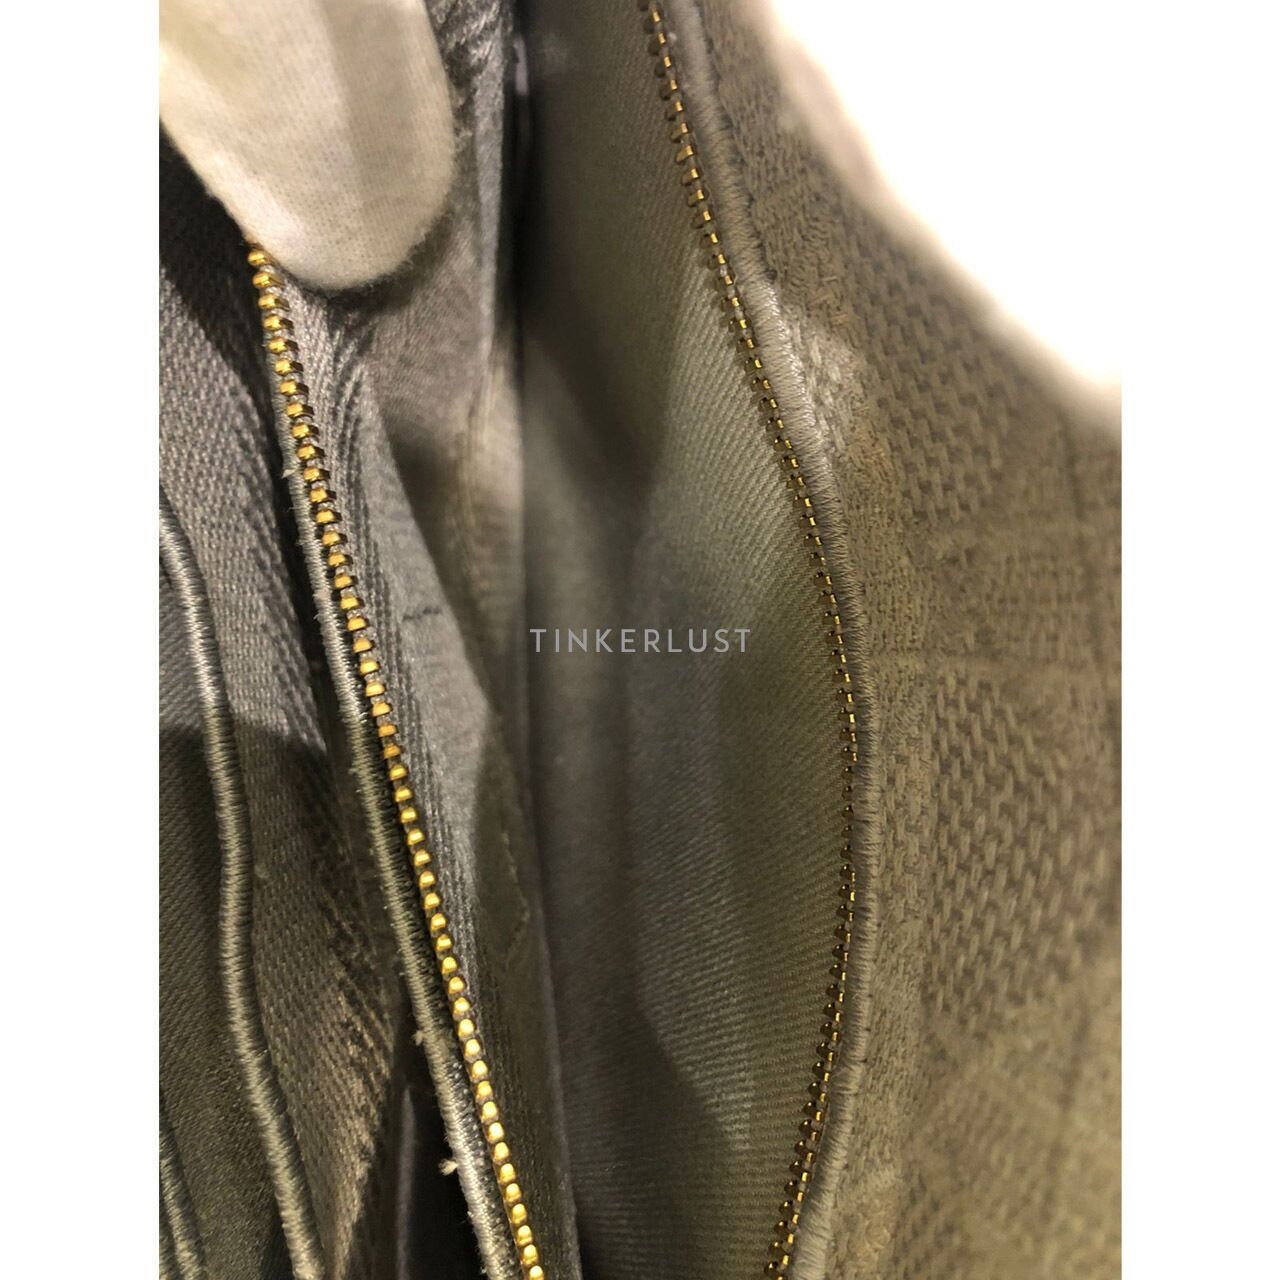 Christian Dior Lady Dior D-Lite Medium Grey 2022 LGHW Handbag